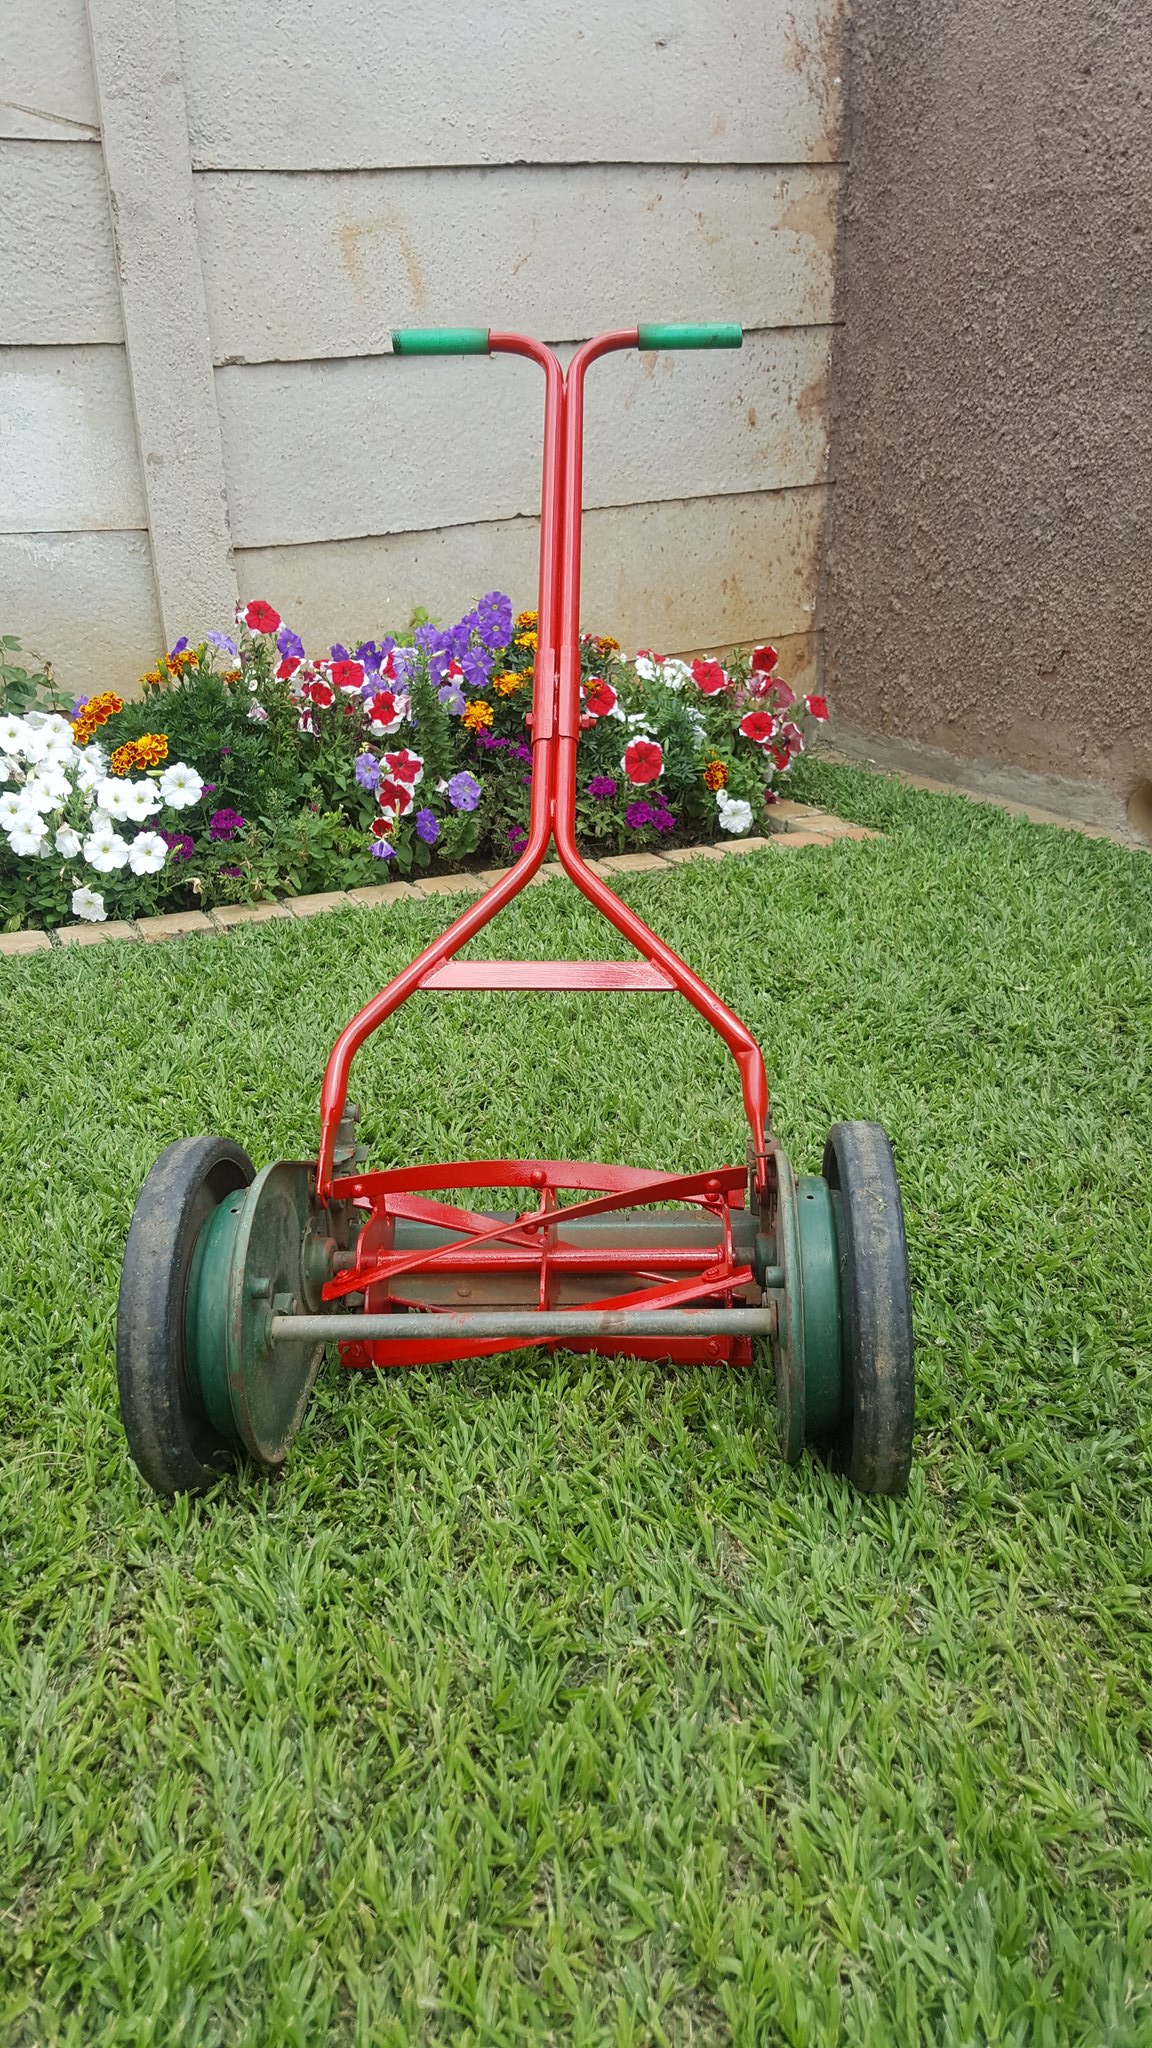 electrode Brawl pendulum vintage manual lawn mower density